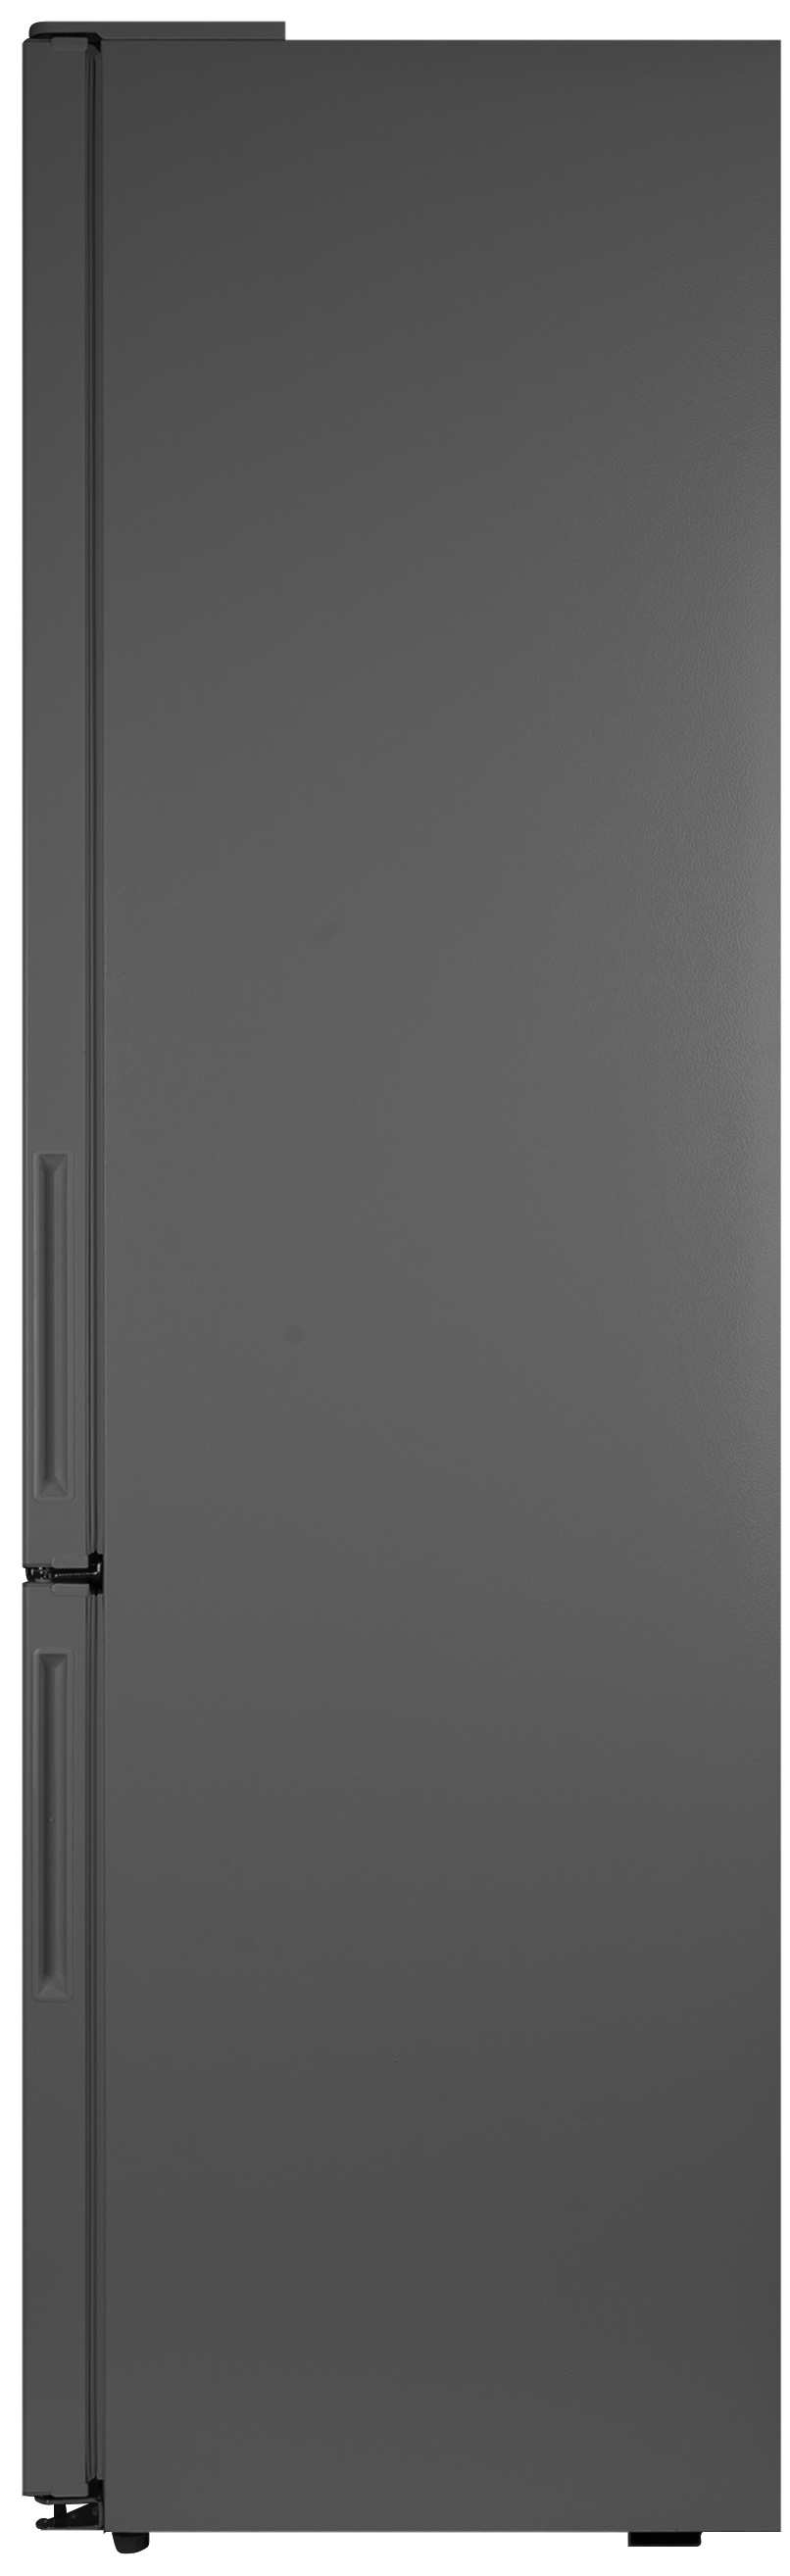 Холодильник Grifon NFND-200X отзывы - изображения 5